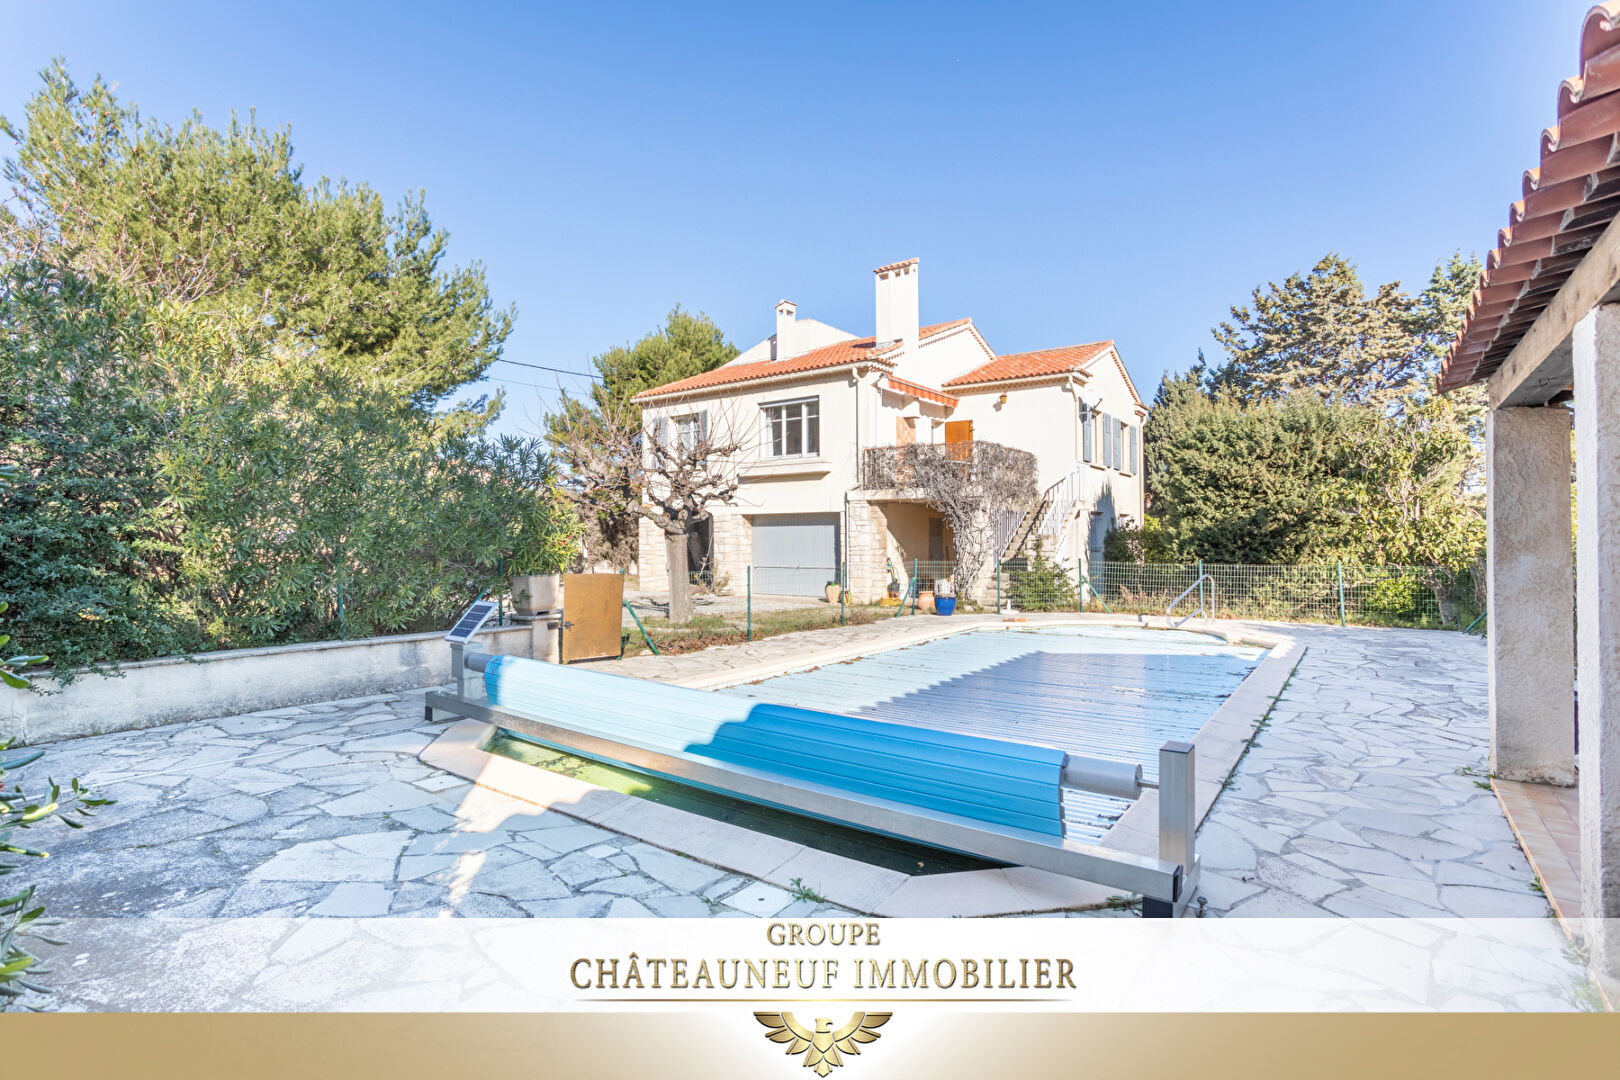 Appartement Chateauneuf  100 m² avec jardin et piscine ( 211 m² )